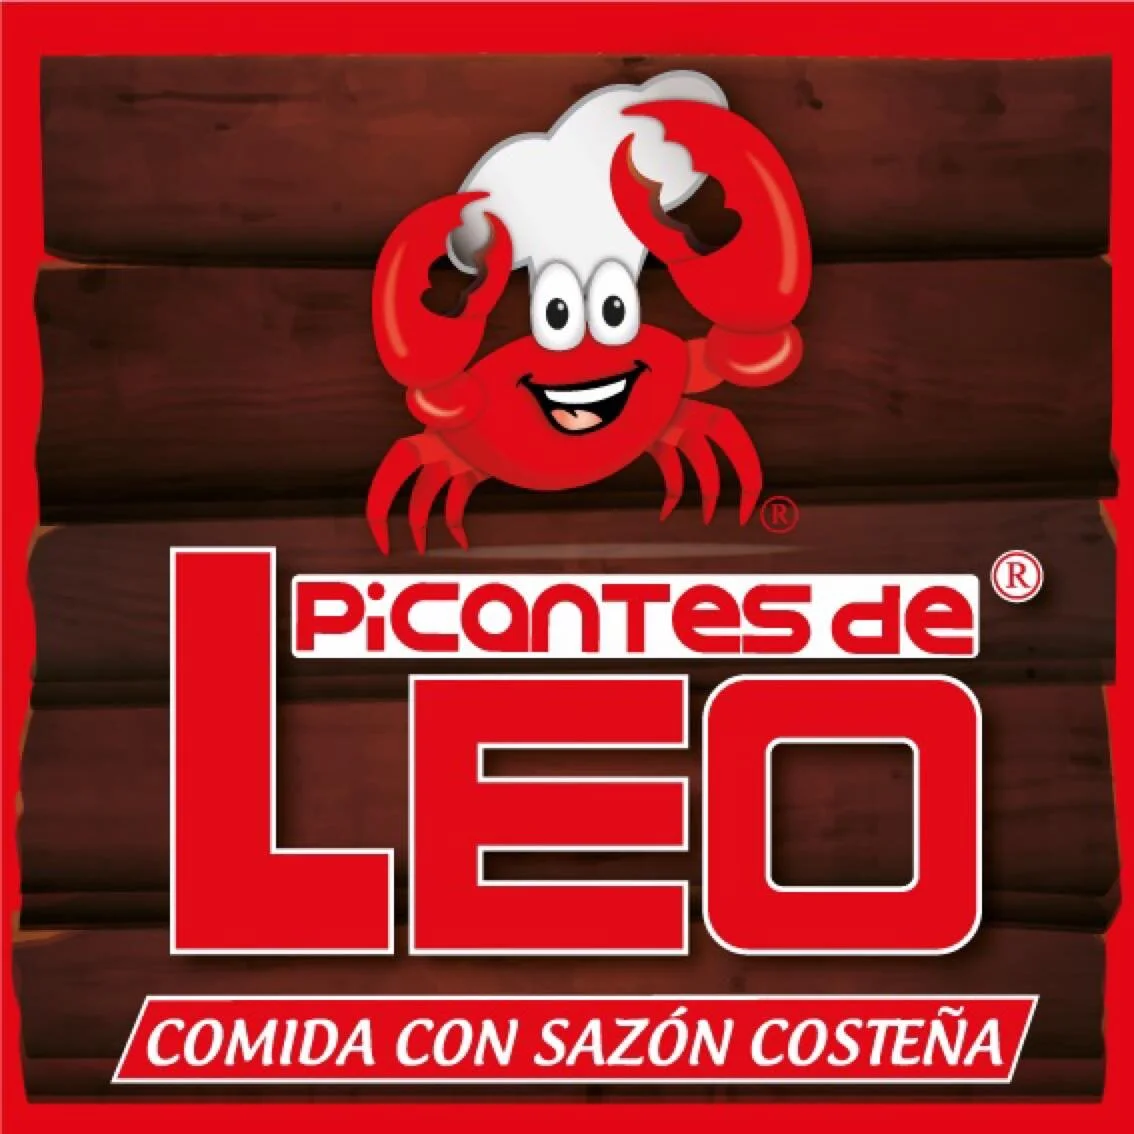 Picantes de Leo, Parque Calderón-4352